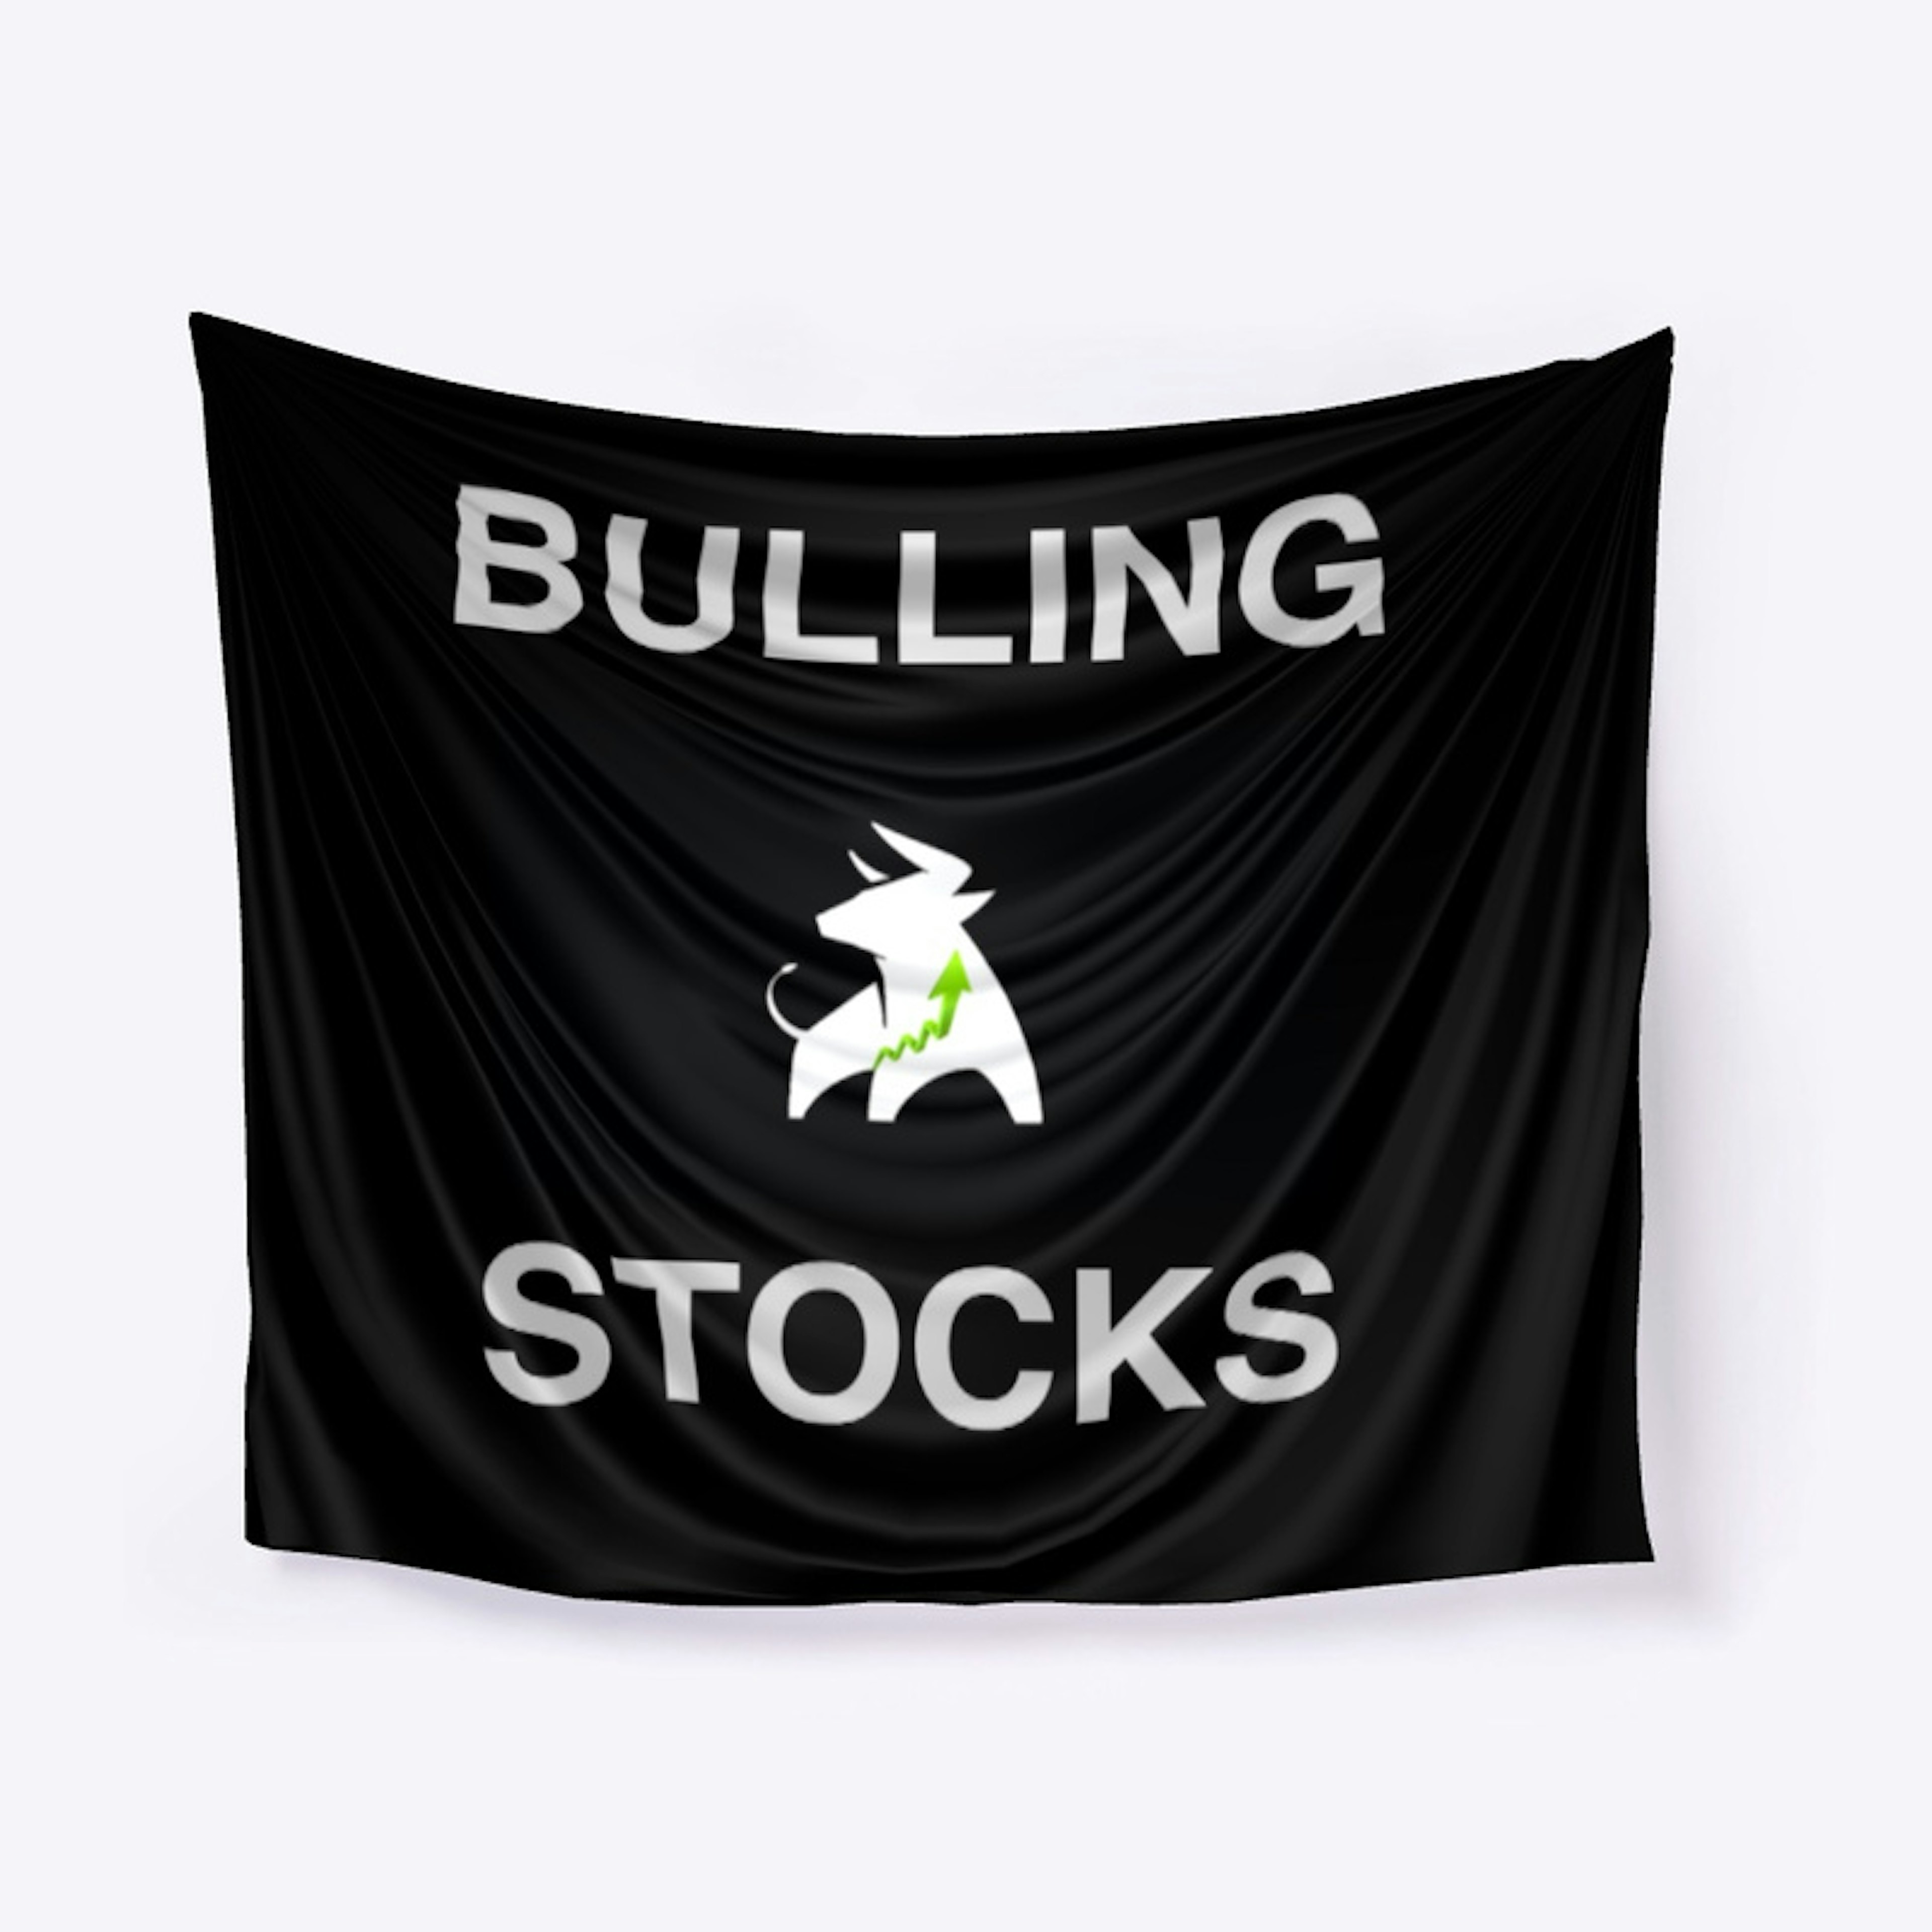 Bulling Stocks Flag(black)